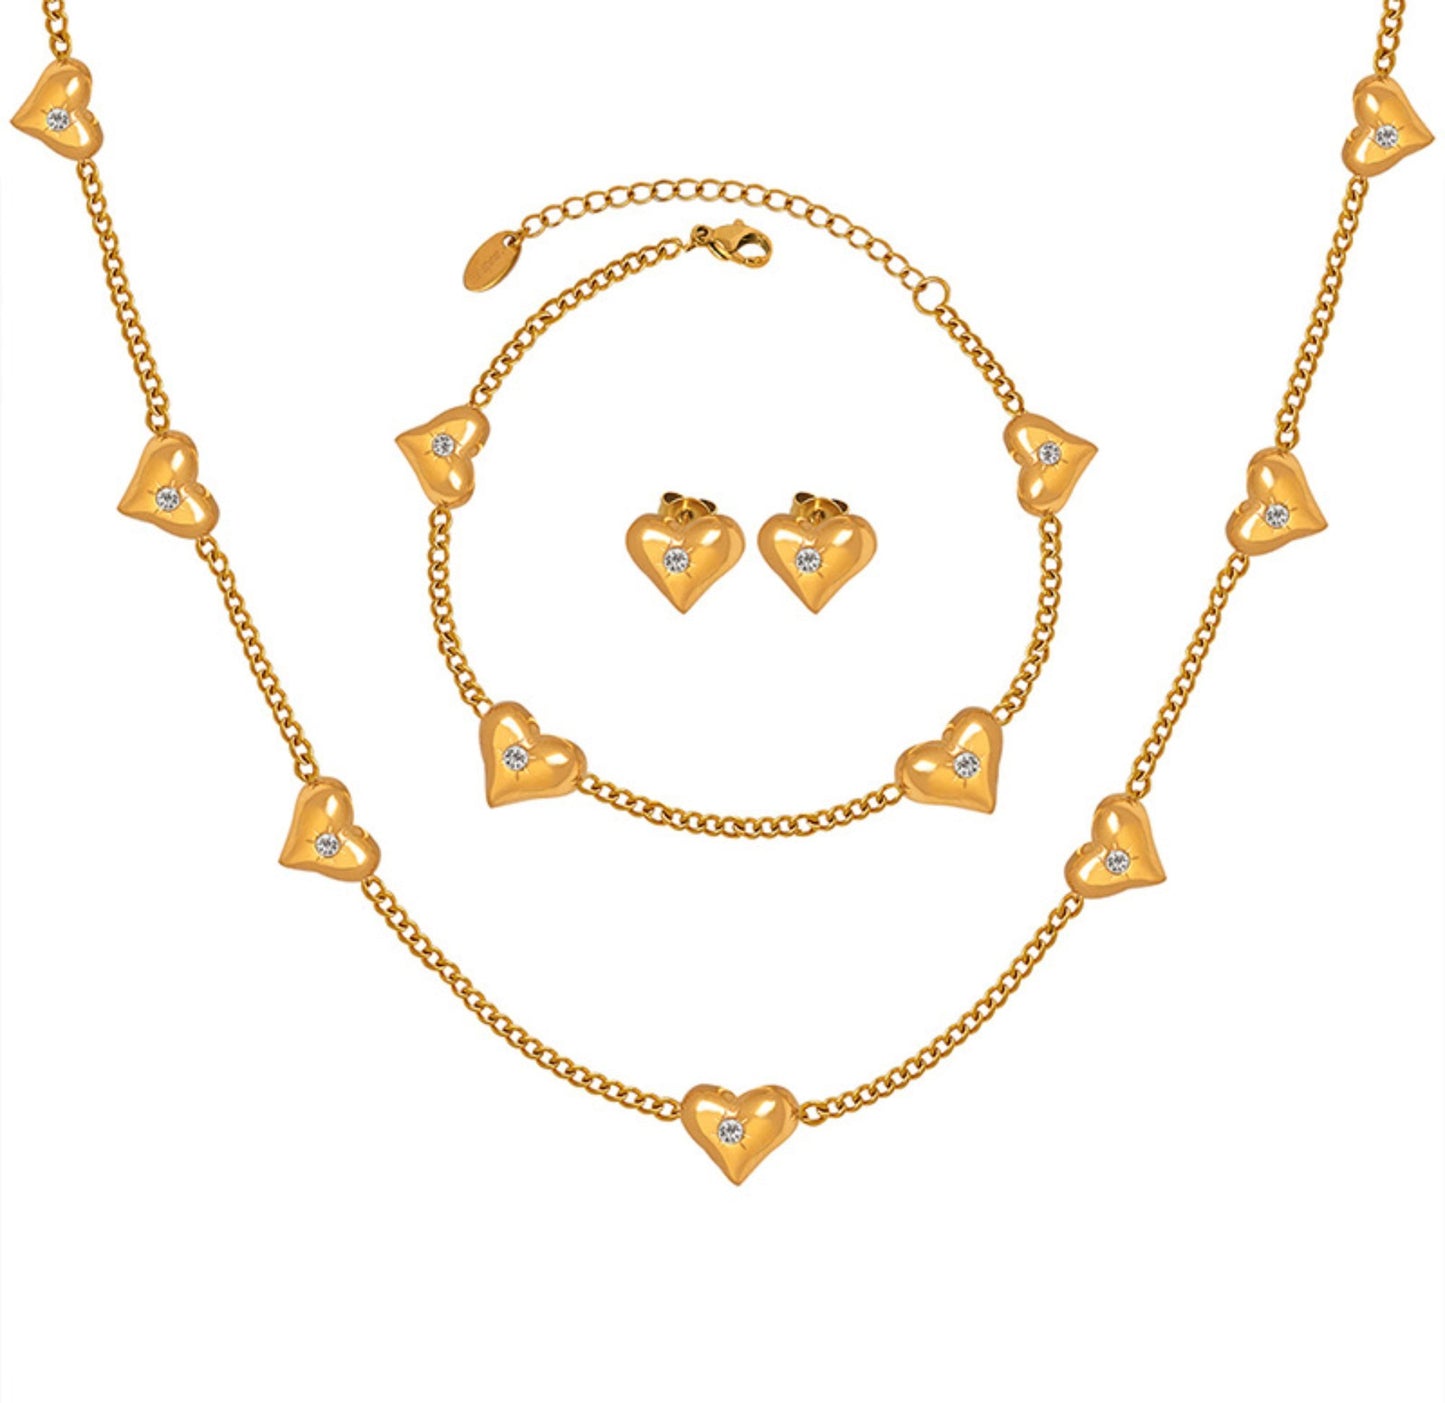 Peach Heart Necklace Bracelet Earrings Jewelry Set/Waterproof